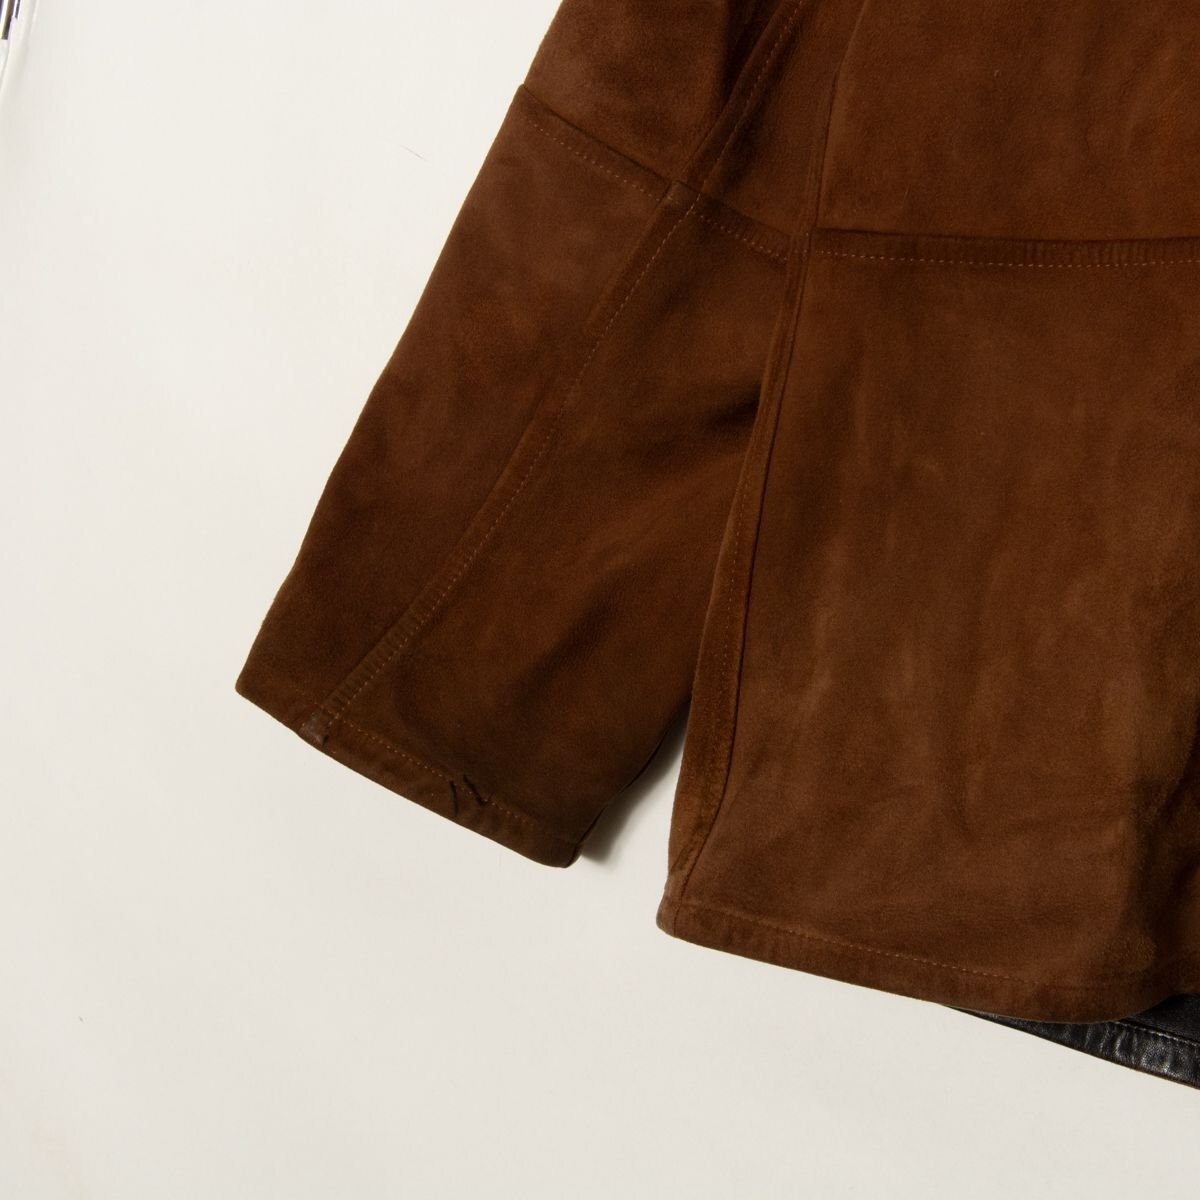 naturelnachureru размер XL кожа пальто с отложным воротником чёрный / черный чай цвет / Brown замша мужской внешний casual двусторонний 